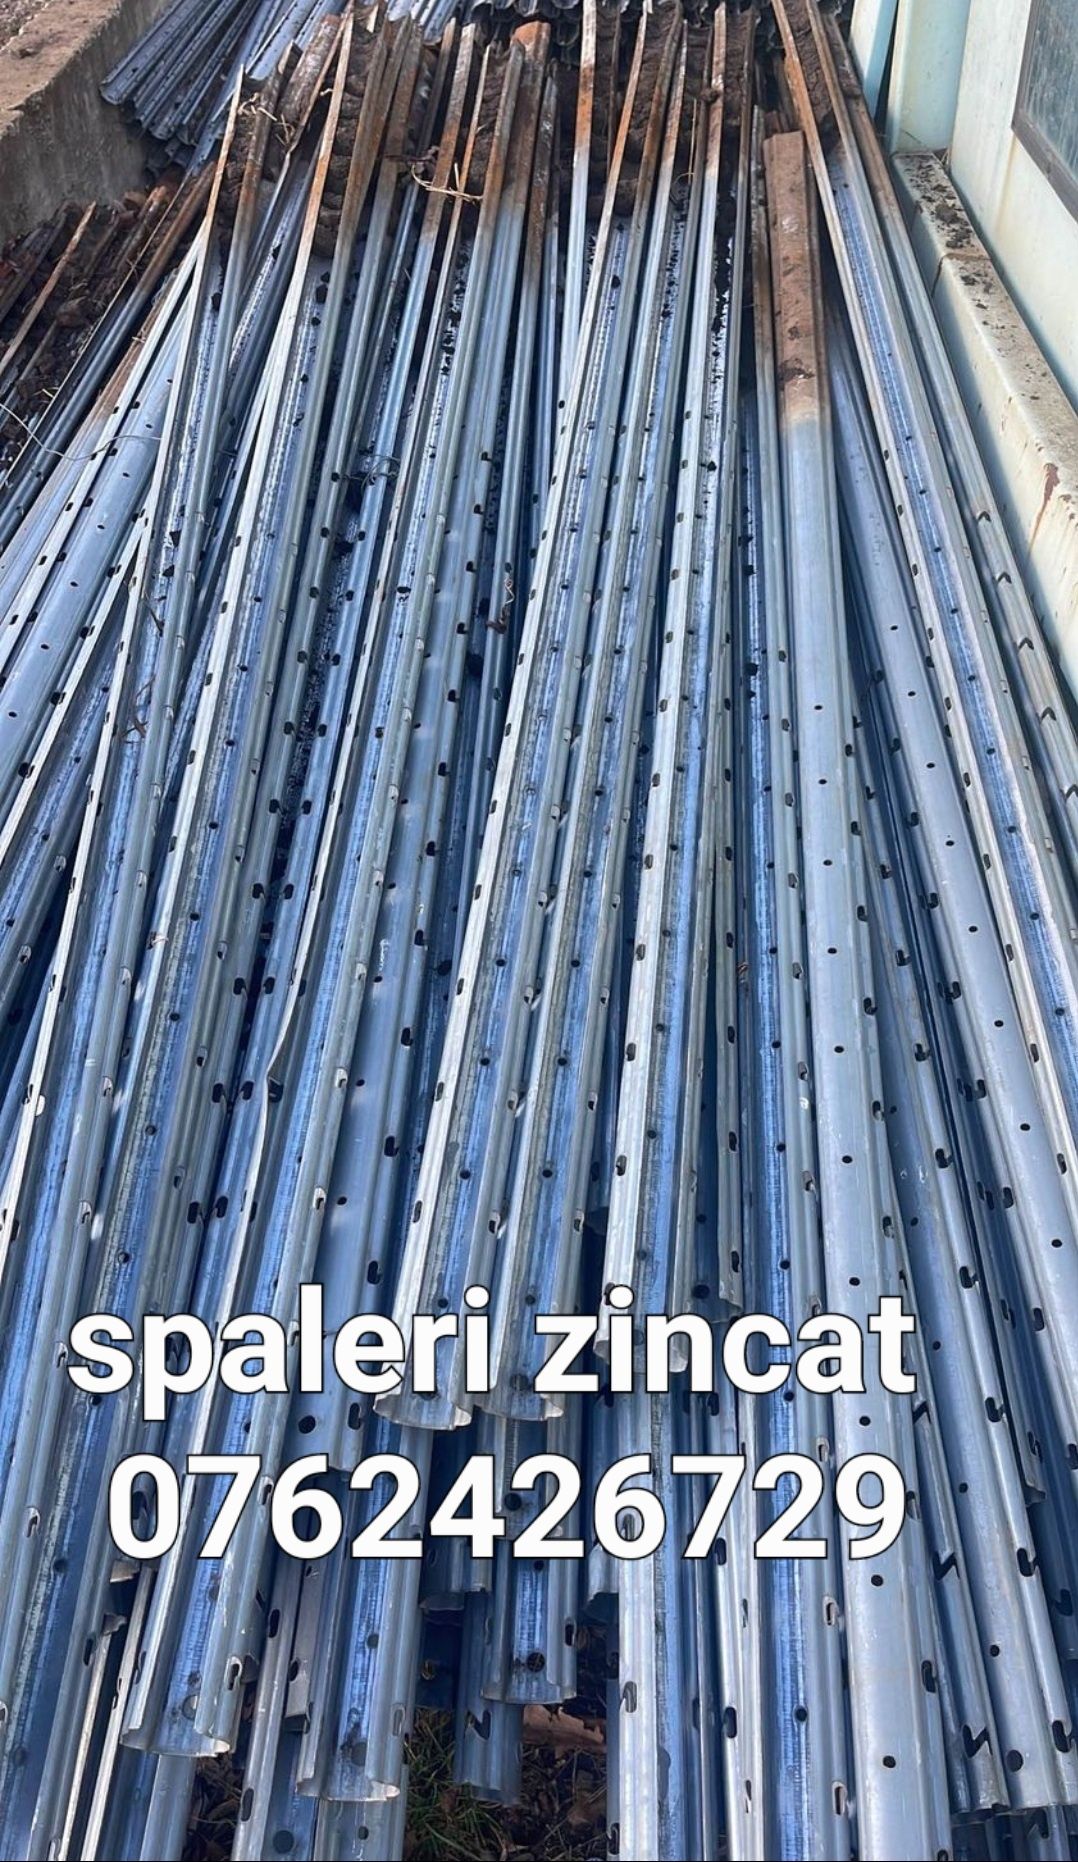 Vând spalieri metalici zincat